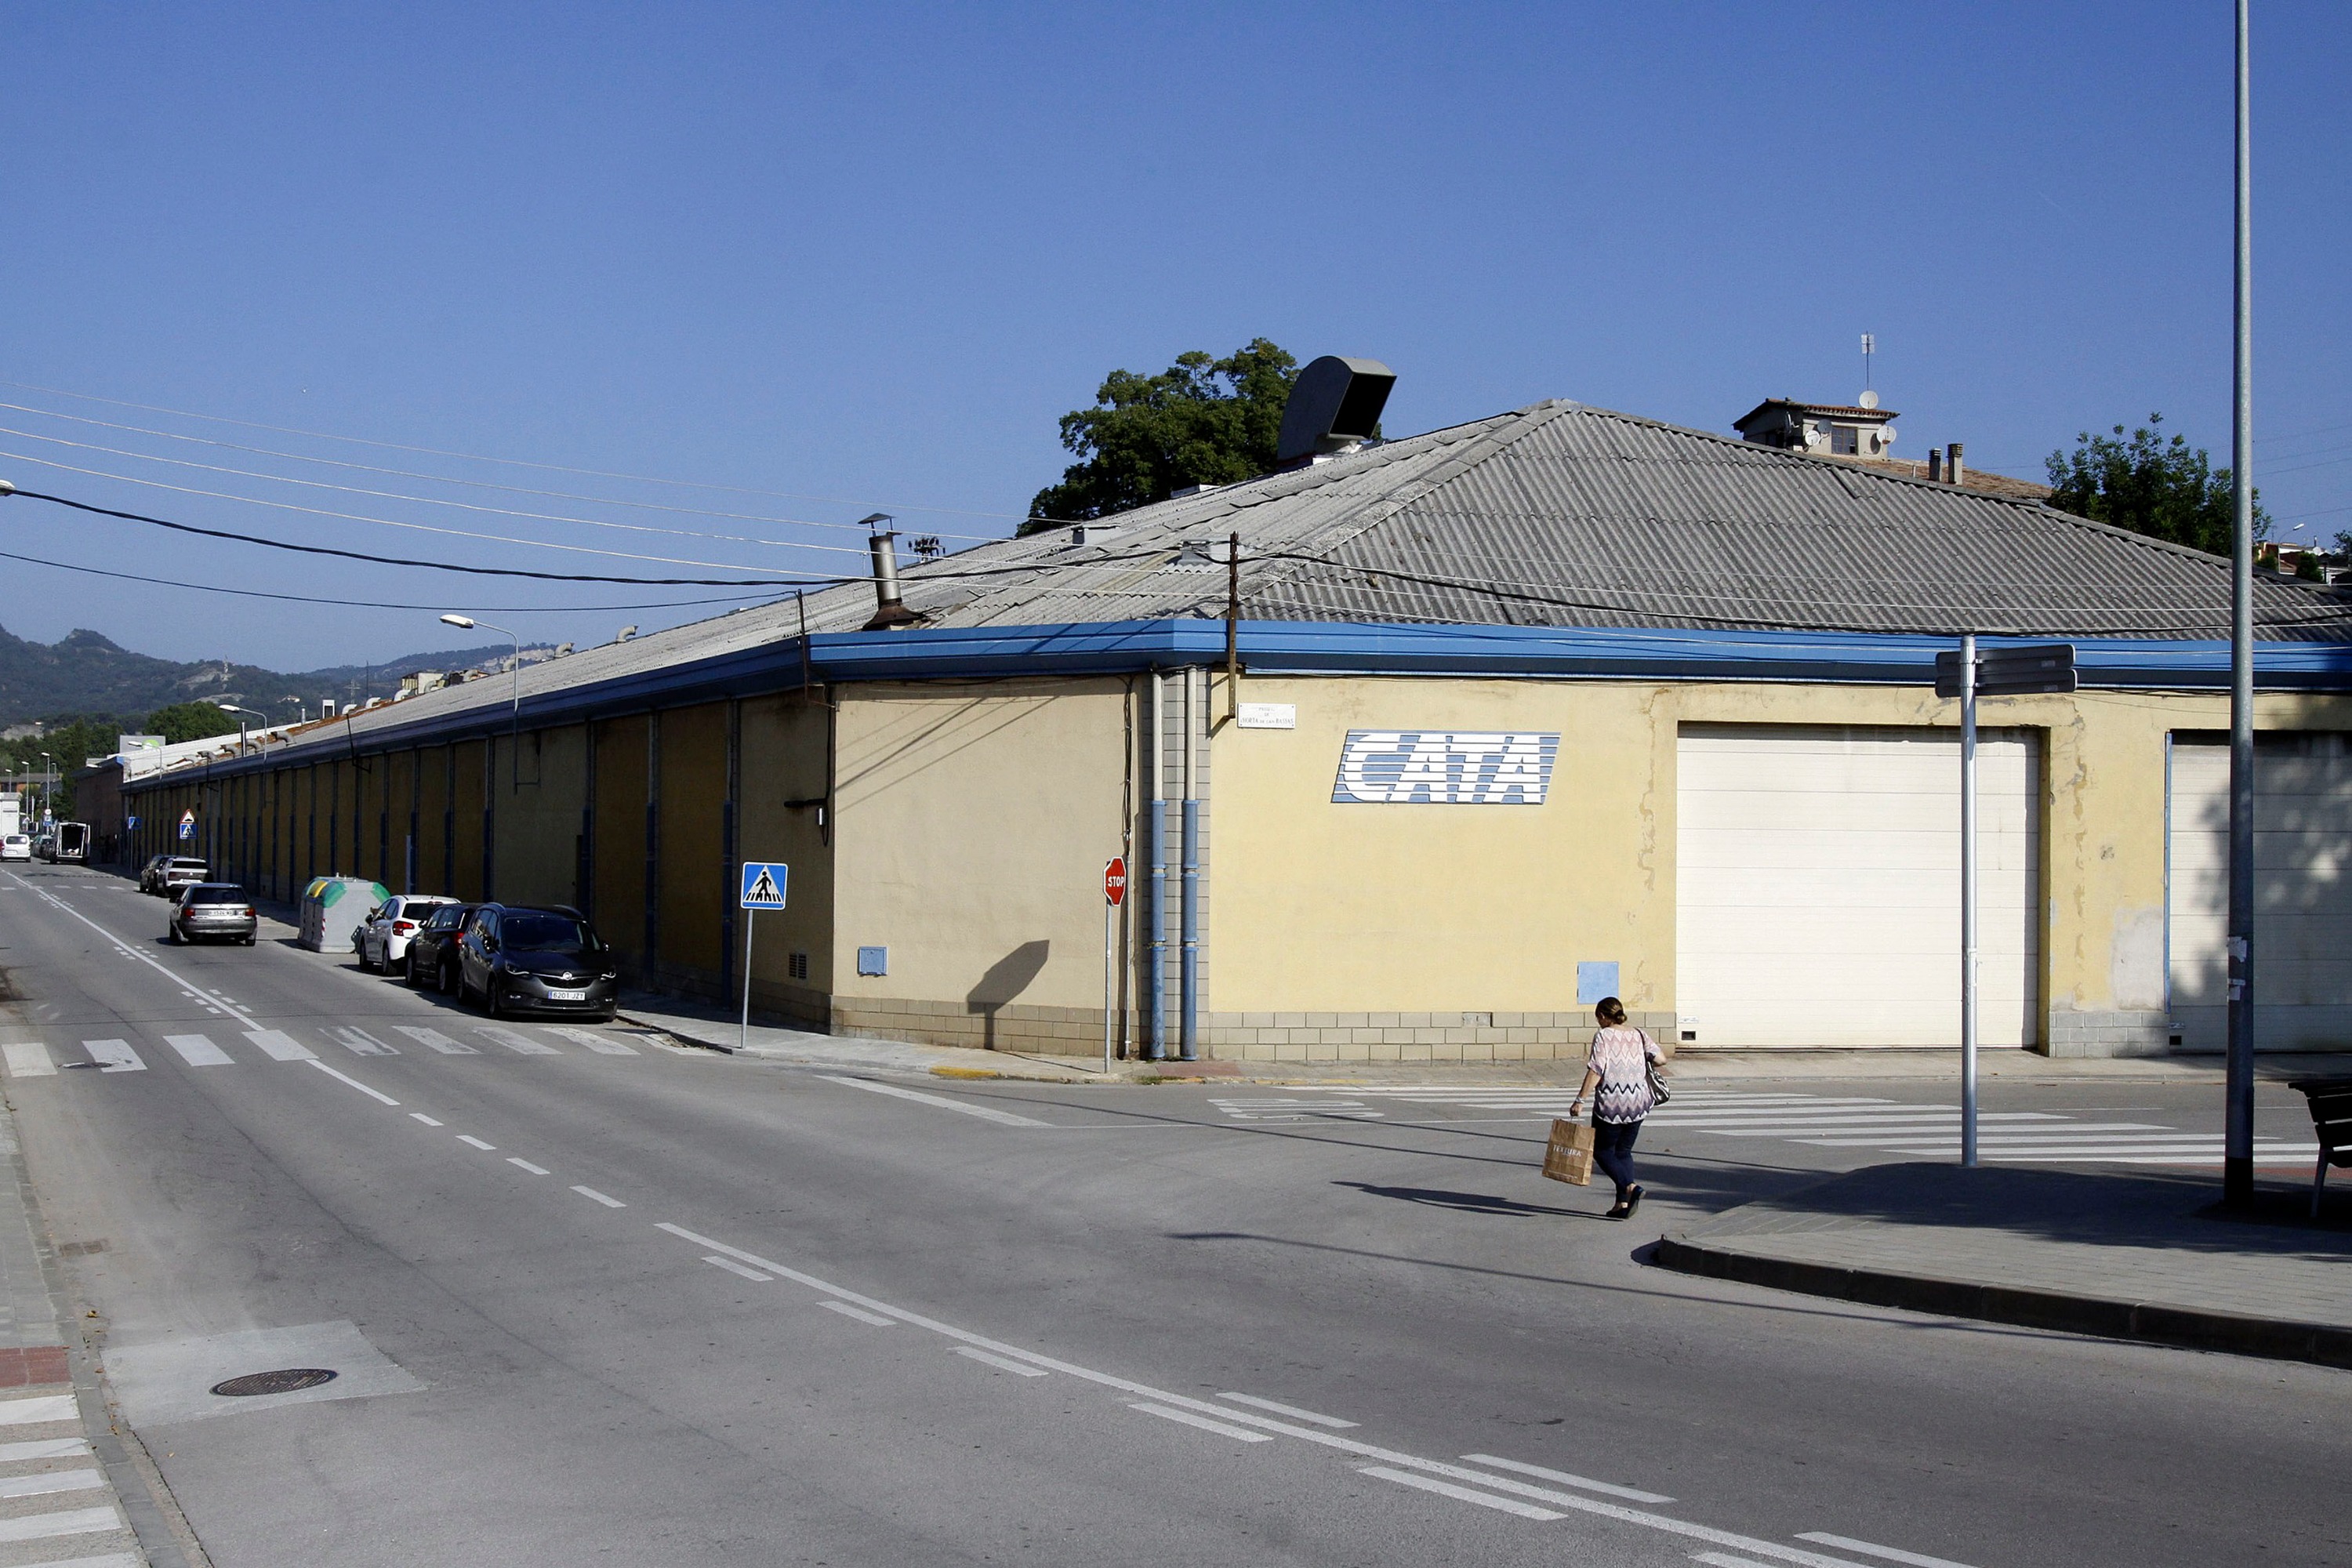 Imatge de la fàbrica de Cata a Torelló